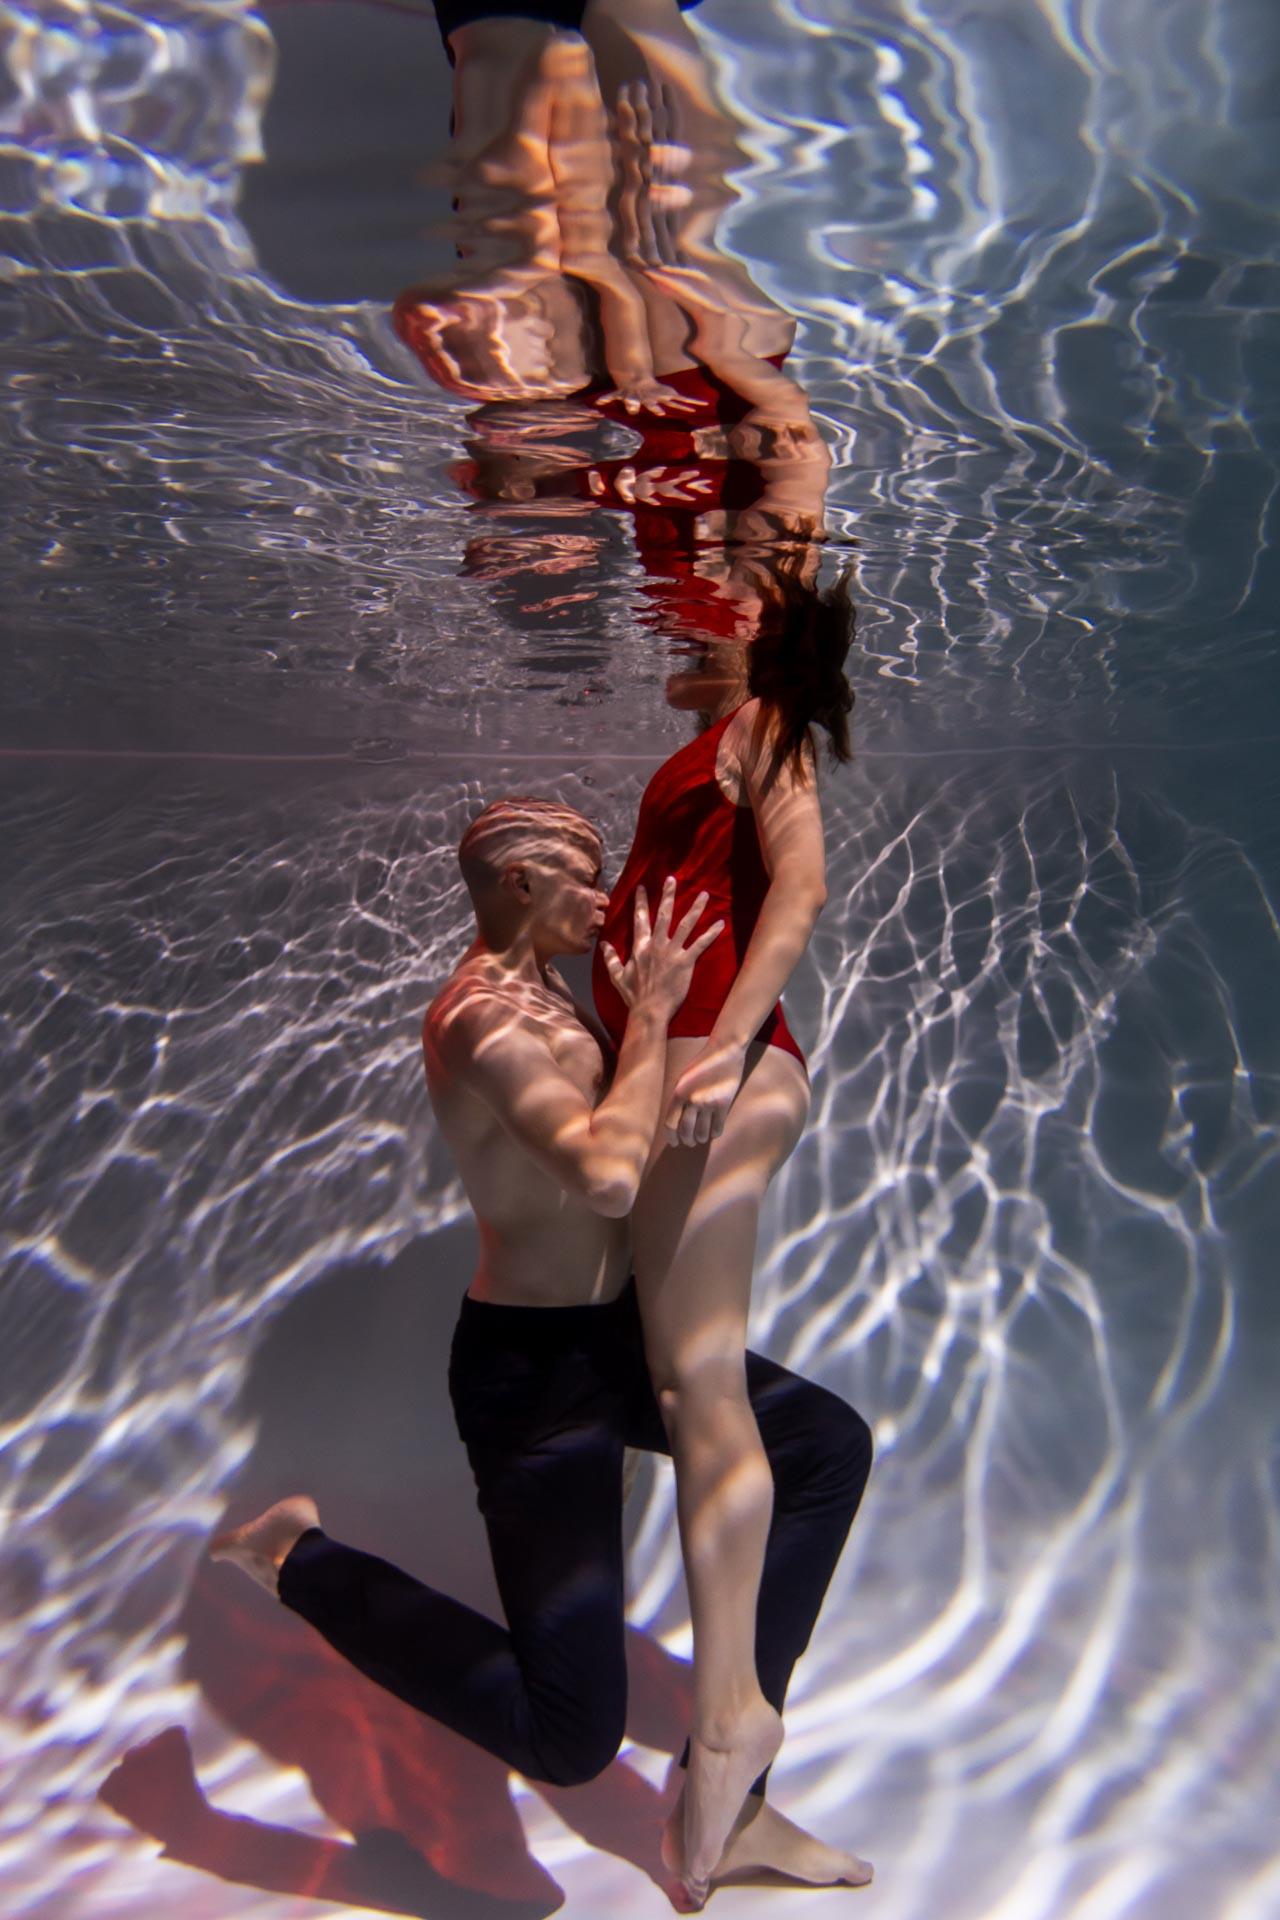 фотосессия в бассейне с мужем